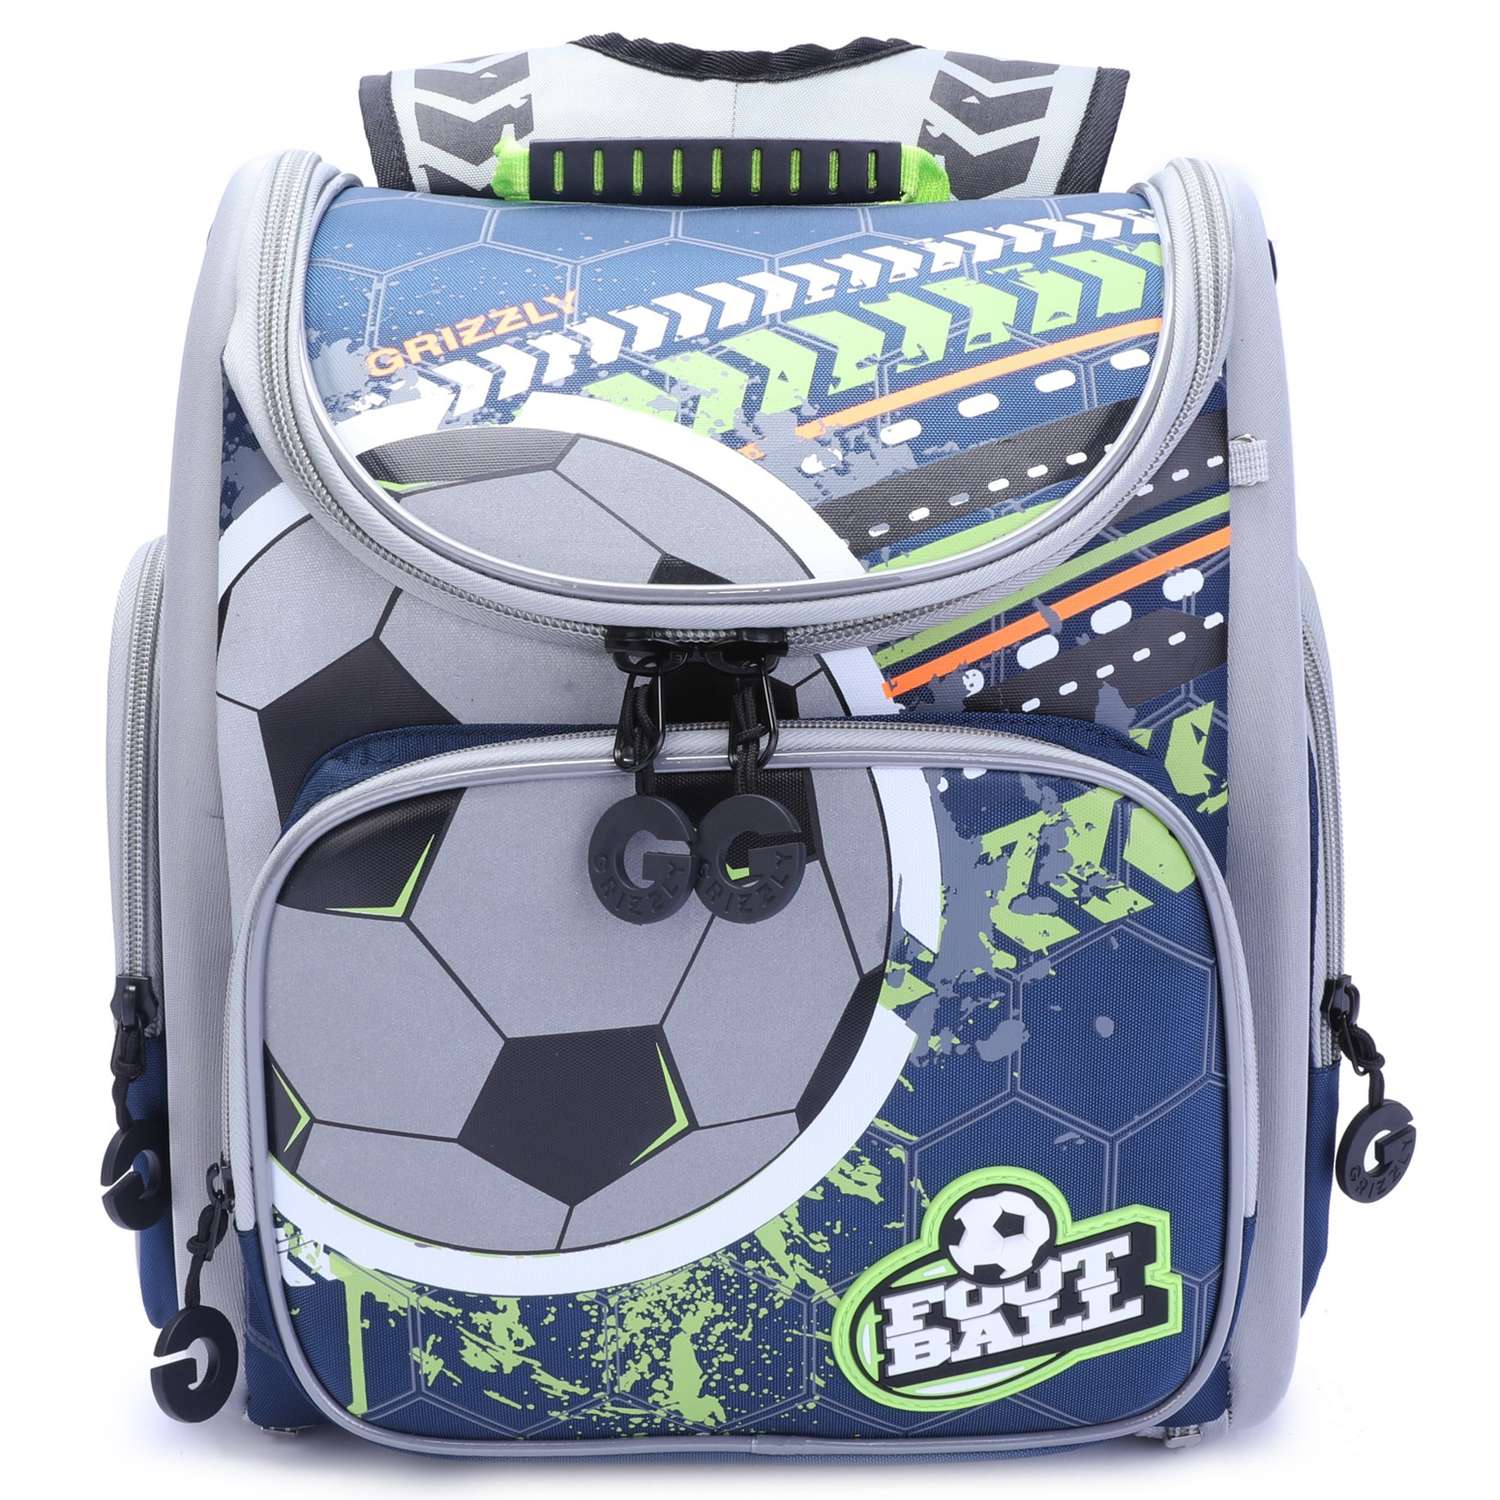 Рюкзак школьный Grizzly Футбол Черный-Салатовый RA-970-1/1 - фото 1